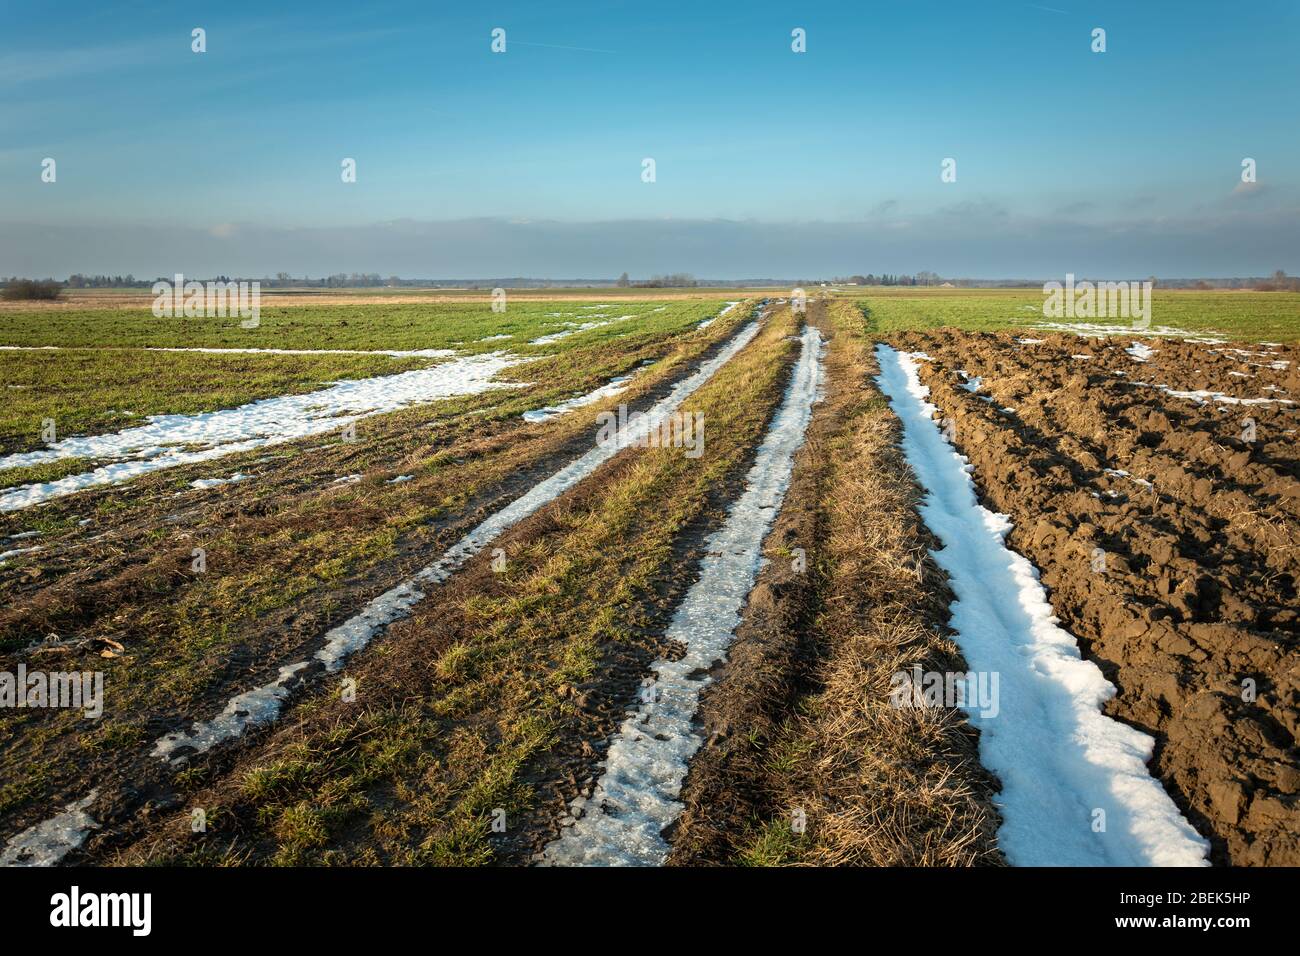 Dernier neige sur une route de terre à travers les champs, l'horizon et le ciel bleu du soir Banque D'Images